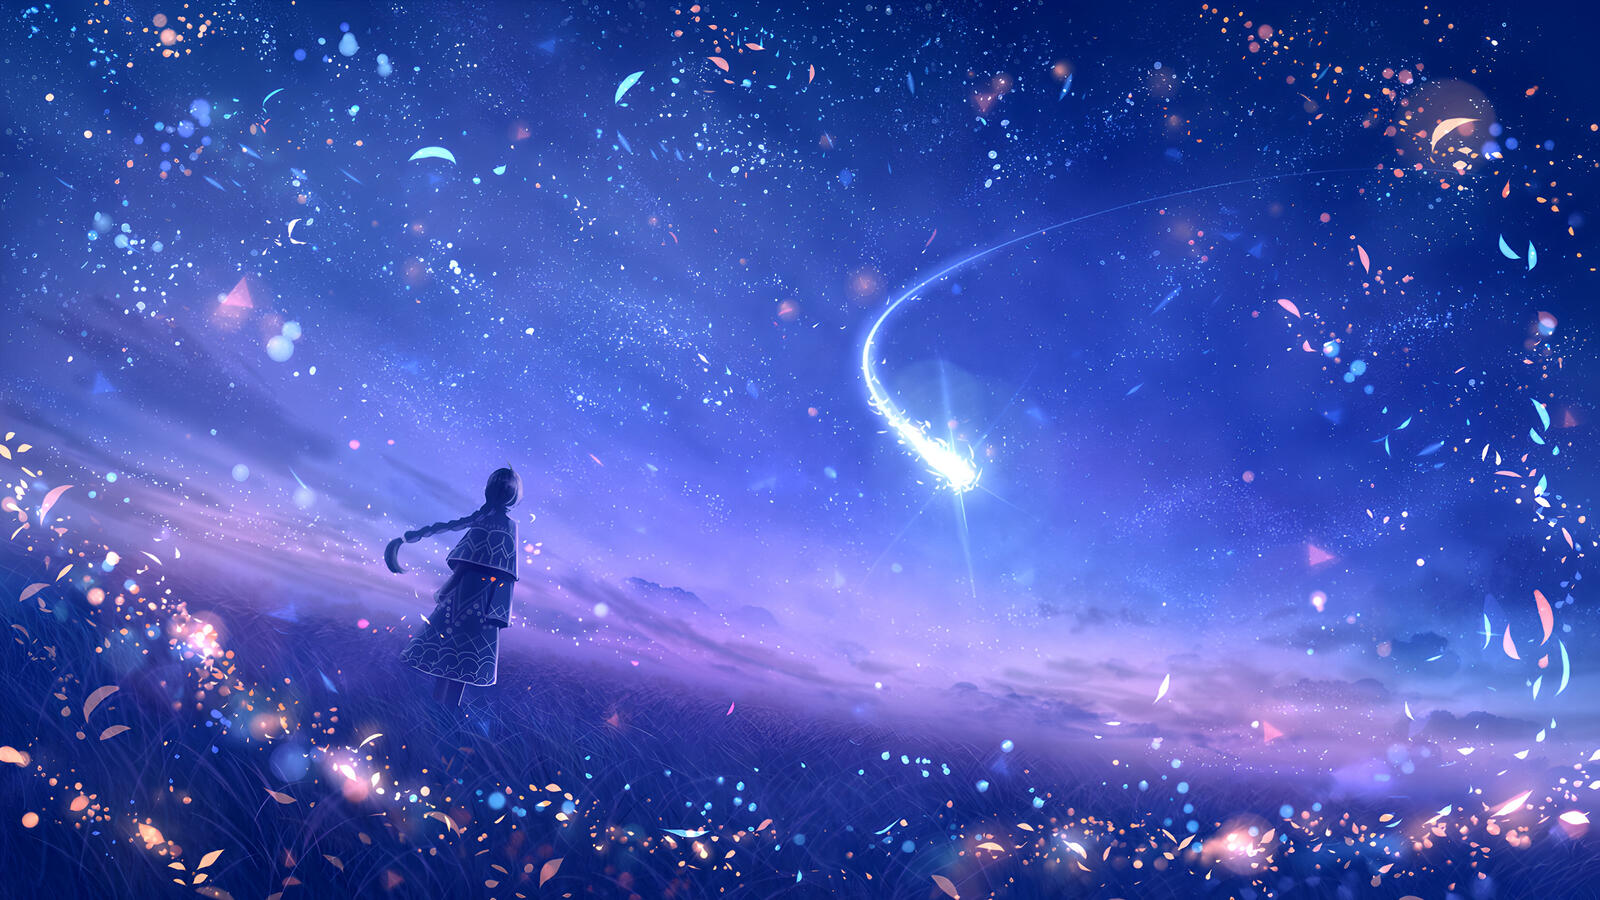 Бесплатное фото Девочка смотрит в синее небо на падающую звезду